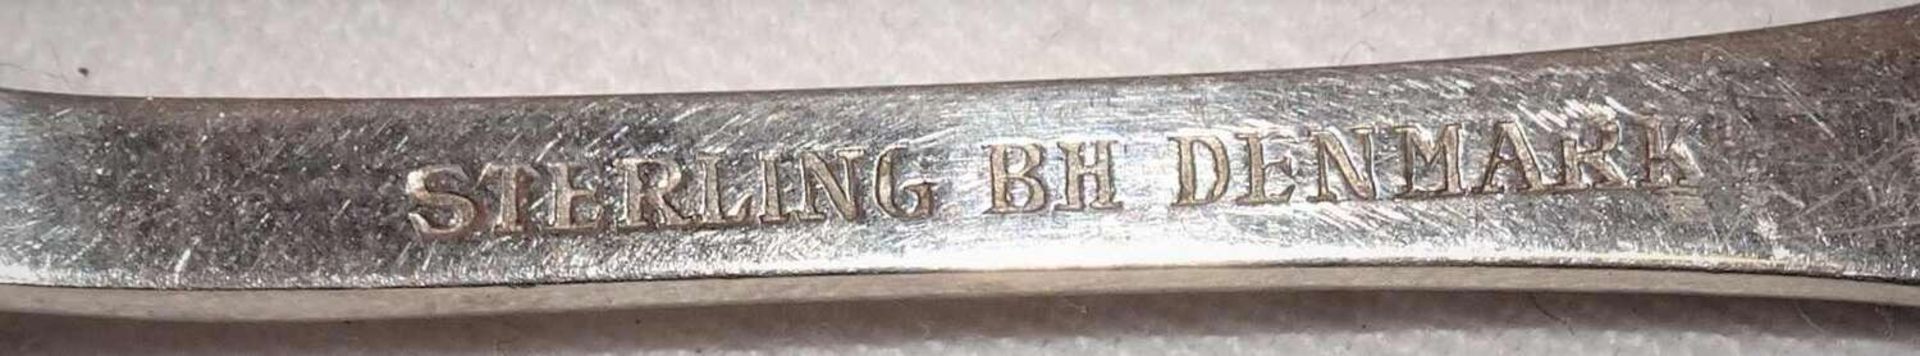 Kleiner Sterling Silber Löffel, gepunzt Sterling BH Denmark. Länge ca. 9,5 cmSilver box, 835 silv - Image 3 of 3